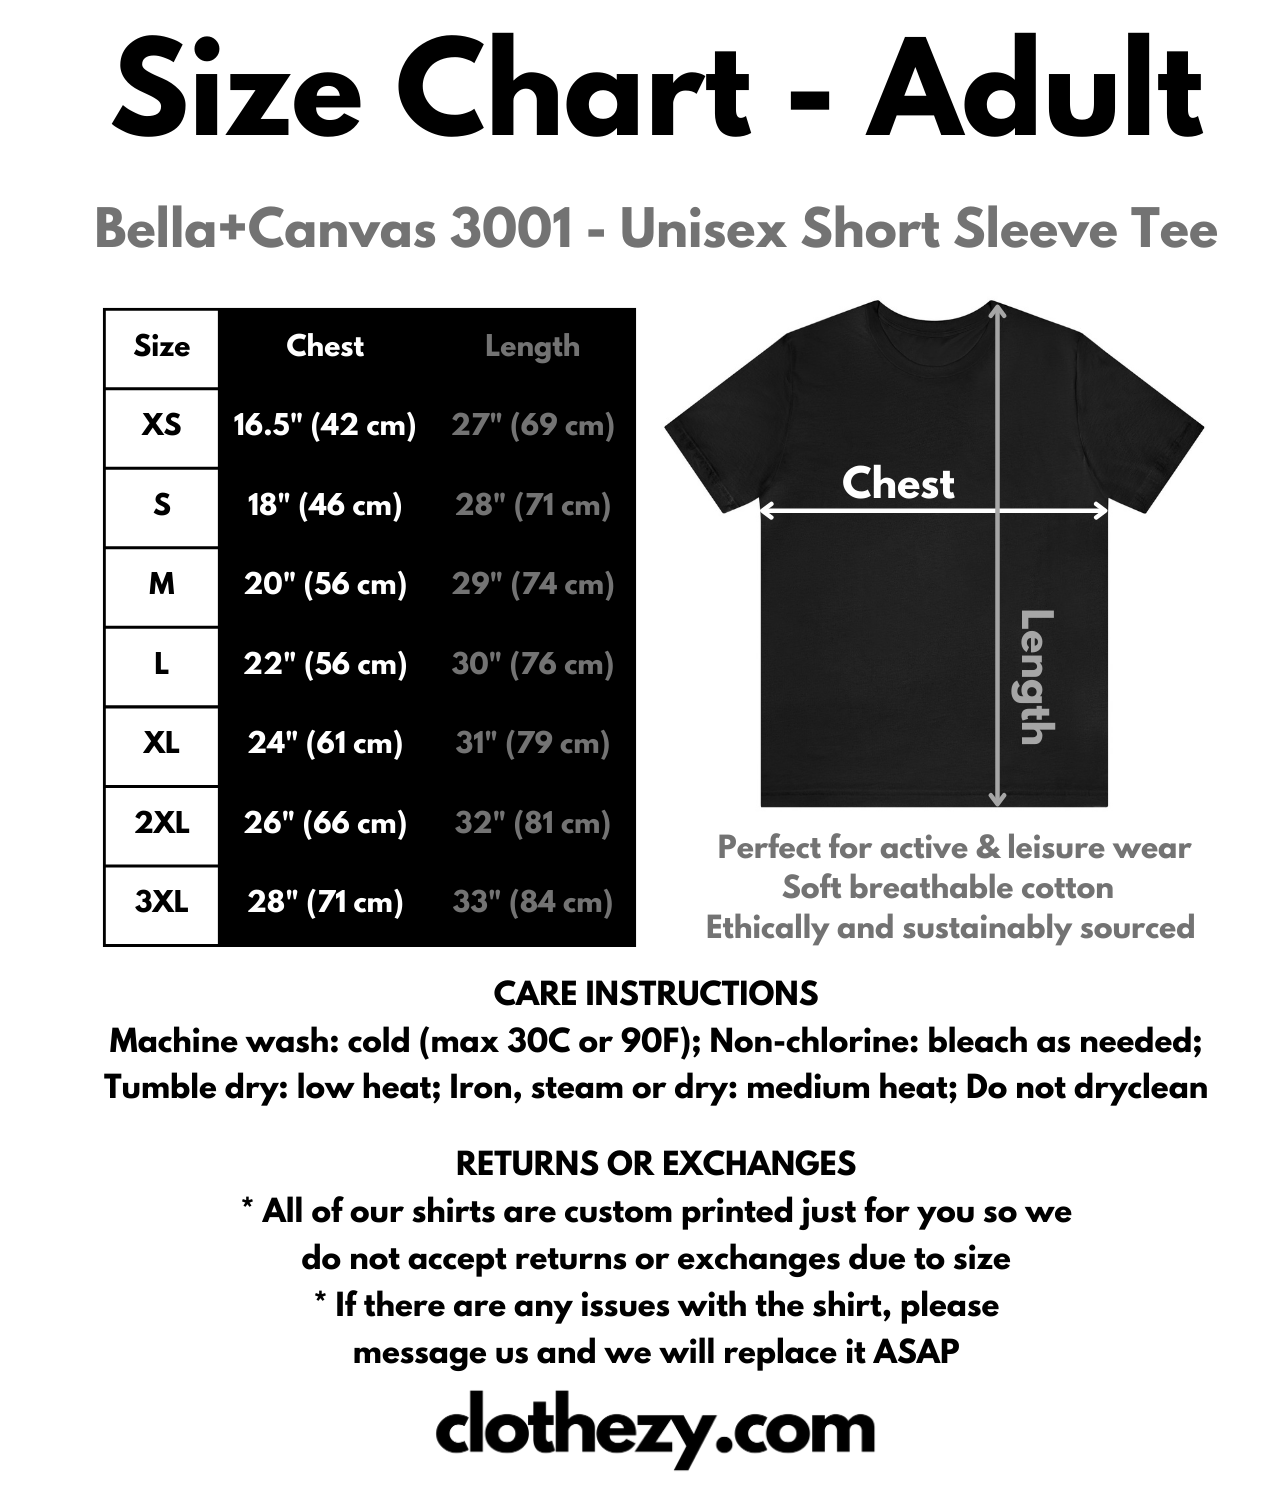 clothezy.com Size Chart - Adult Unisex T-Shirt